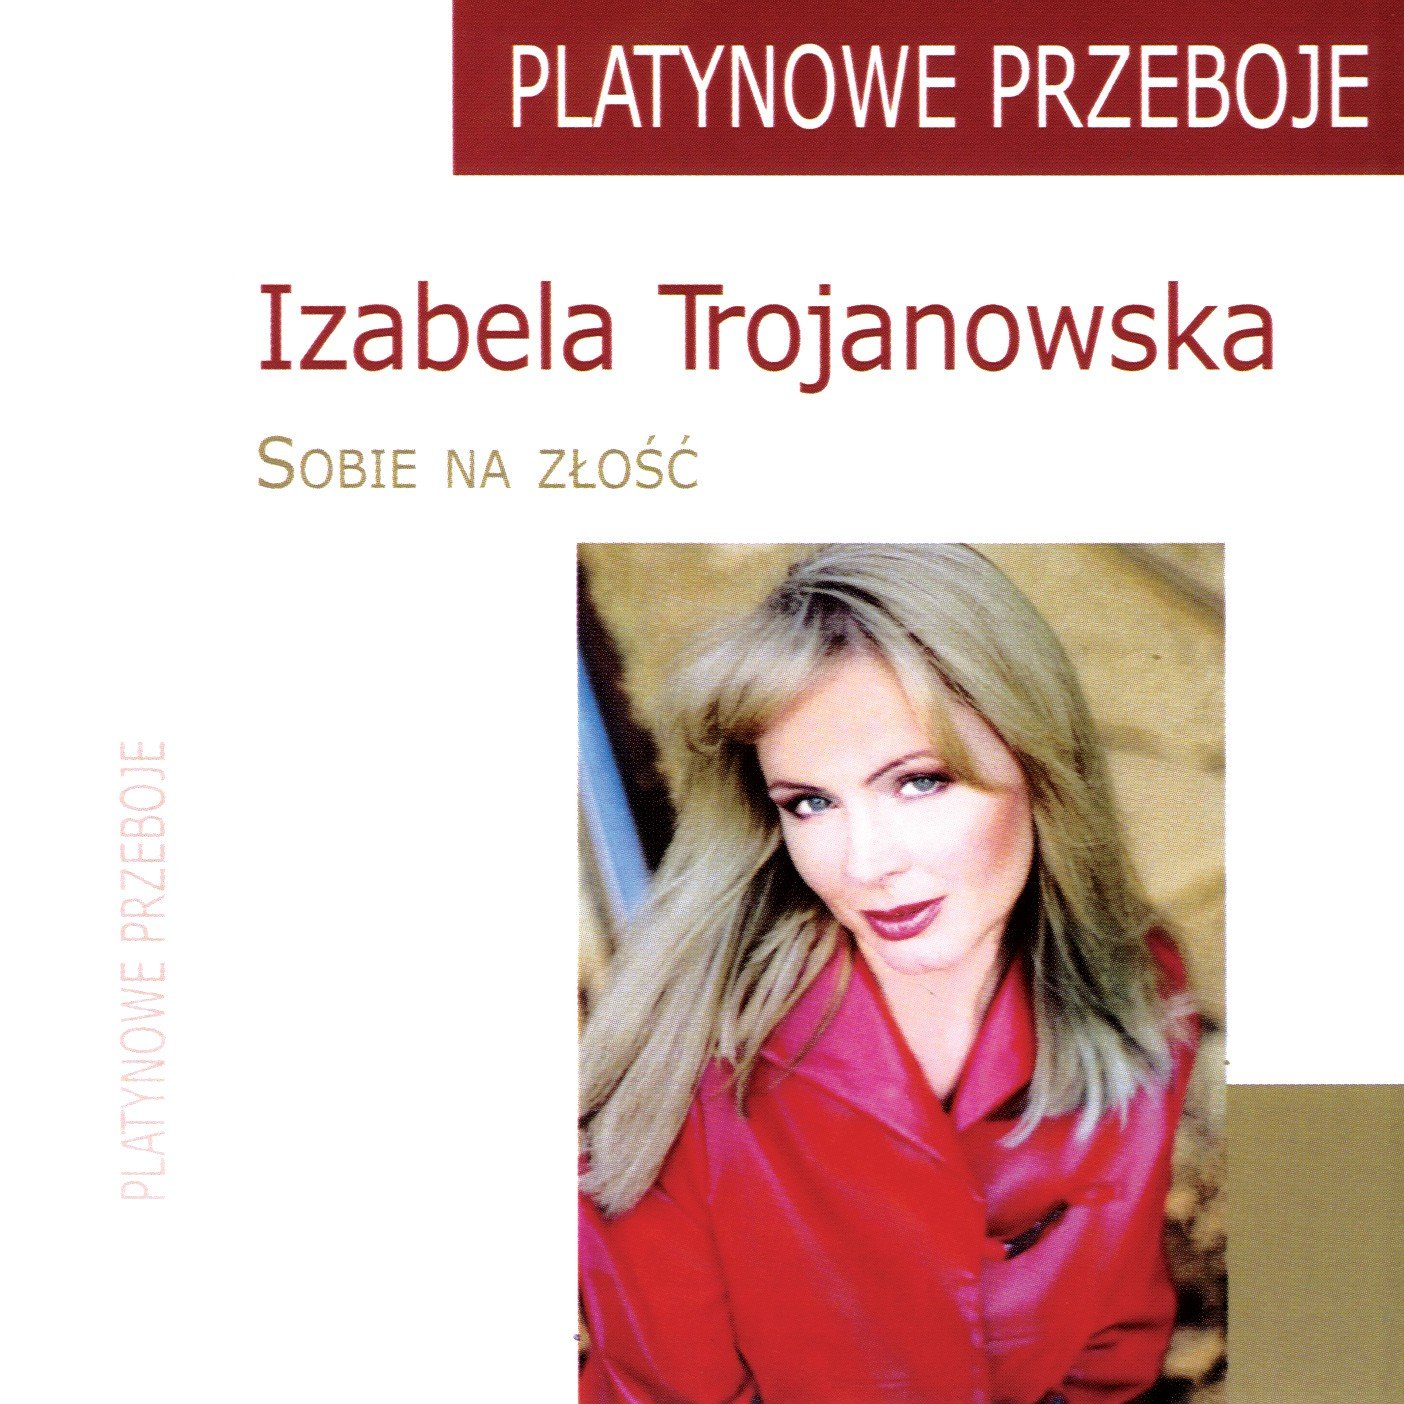 Izabela Trojanowska - Sobie na zlosc (Platynowa Przeboje)